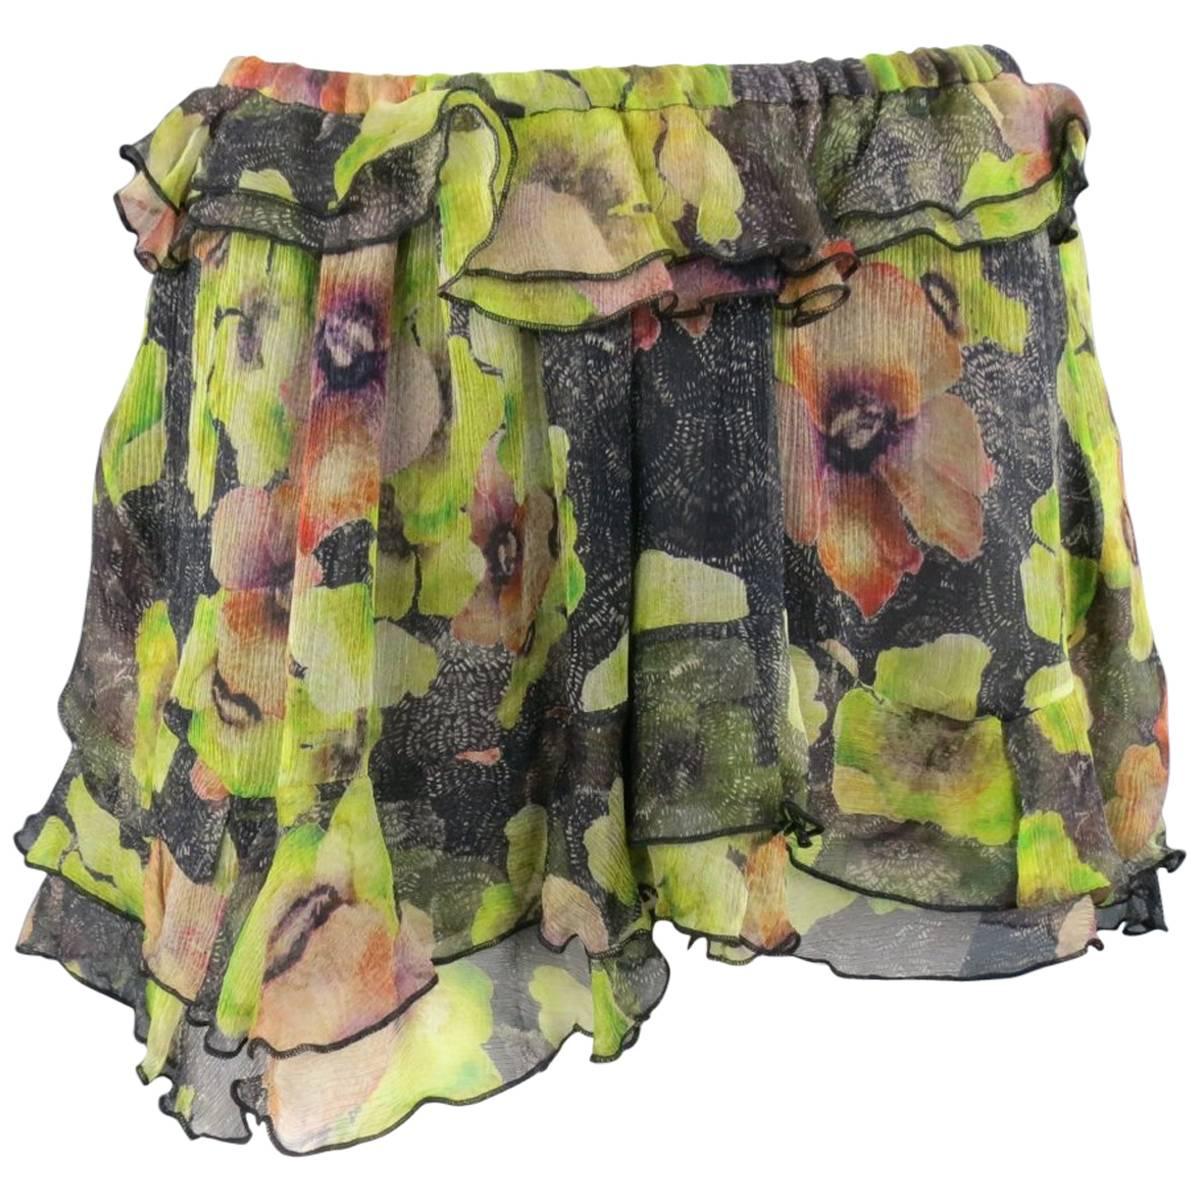 ISABEL MARANT Size 6 Black & Green Floral Print Silk Chiffon Ruffled Mini Skirt